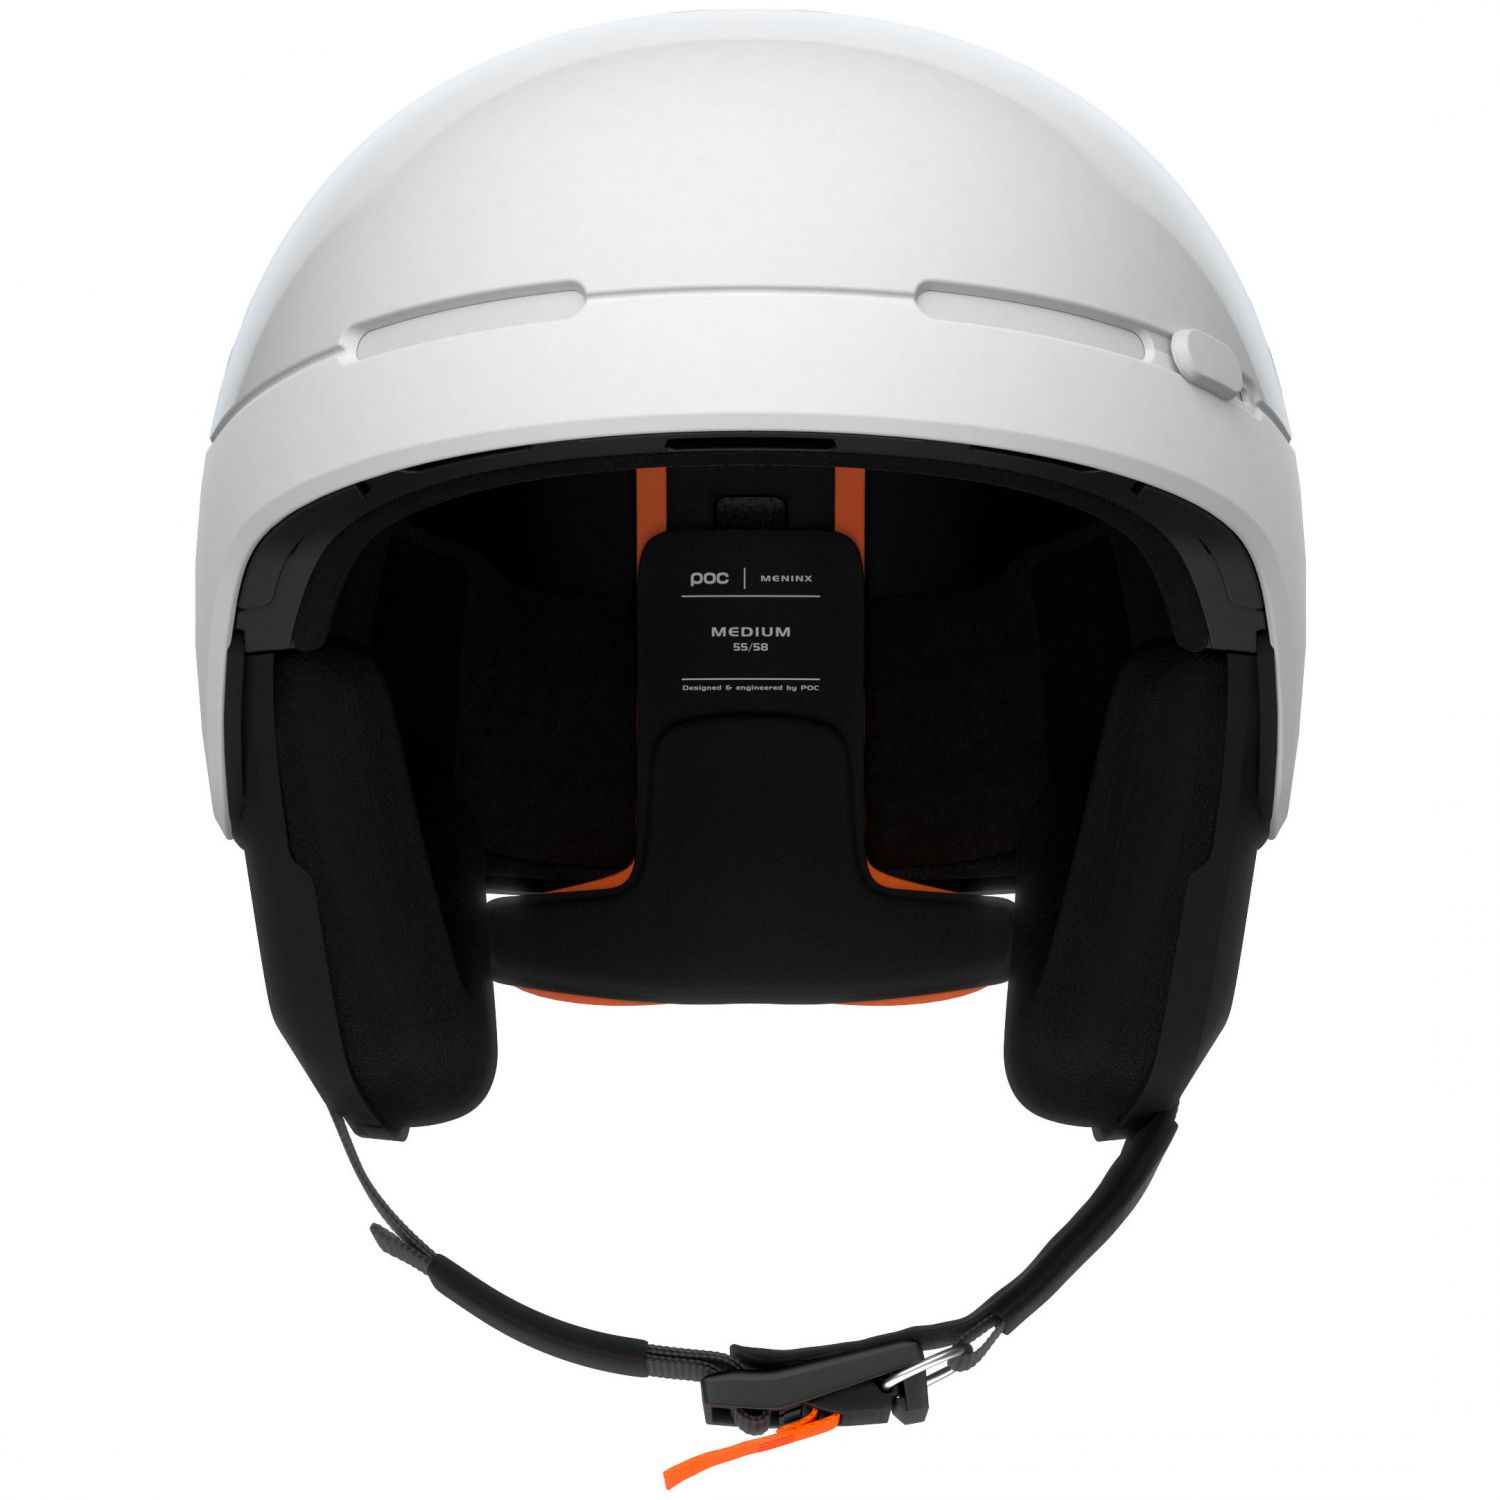 POC Meninx RS Mips, ski helmet, hydrogen white